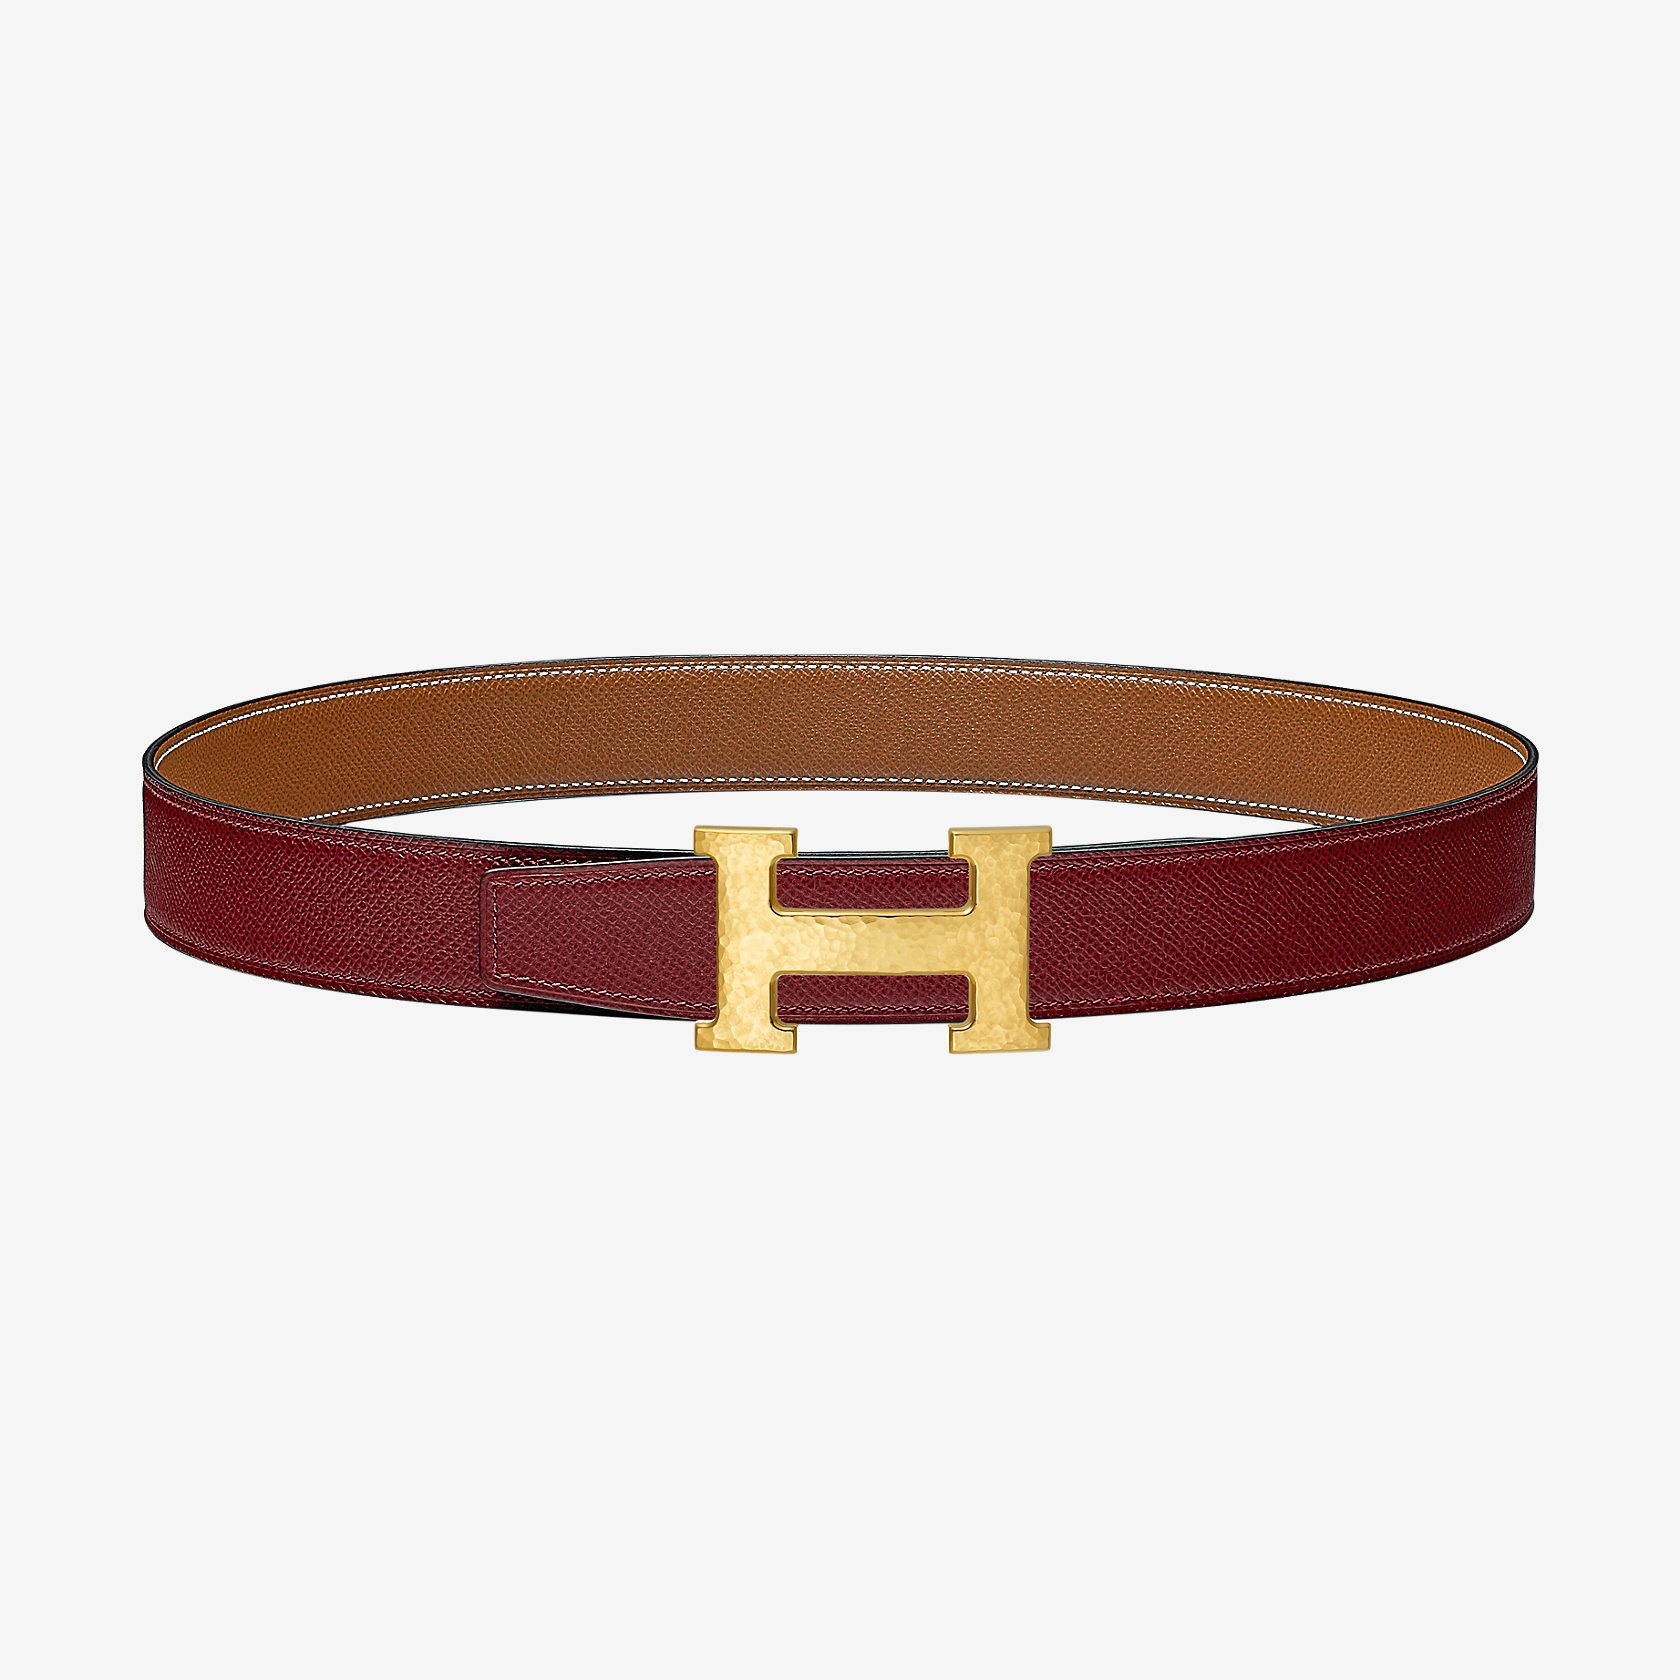 H Martelee belt buckle & Reversible leather strap 32 mm | Hermes UK